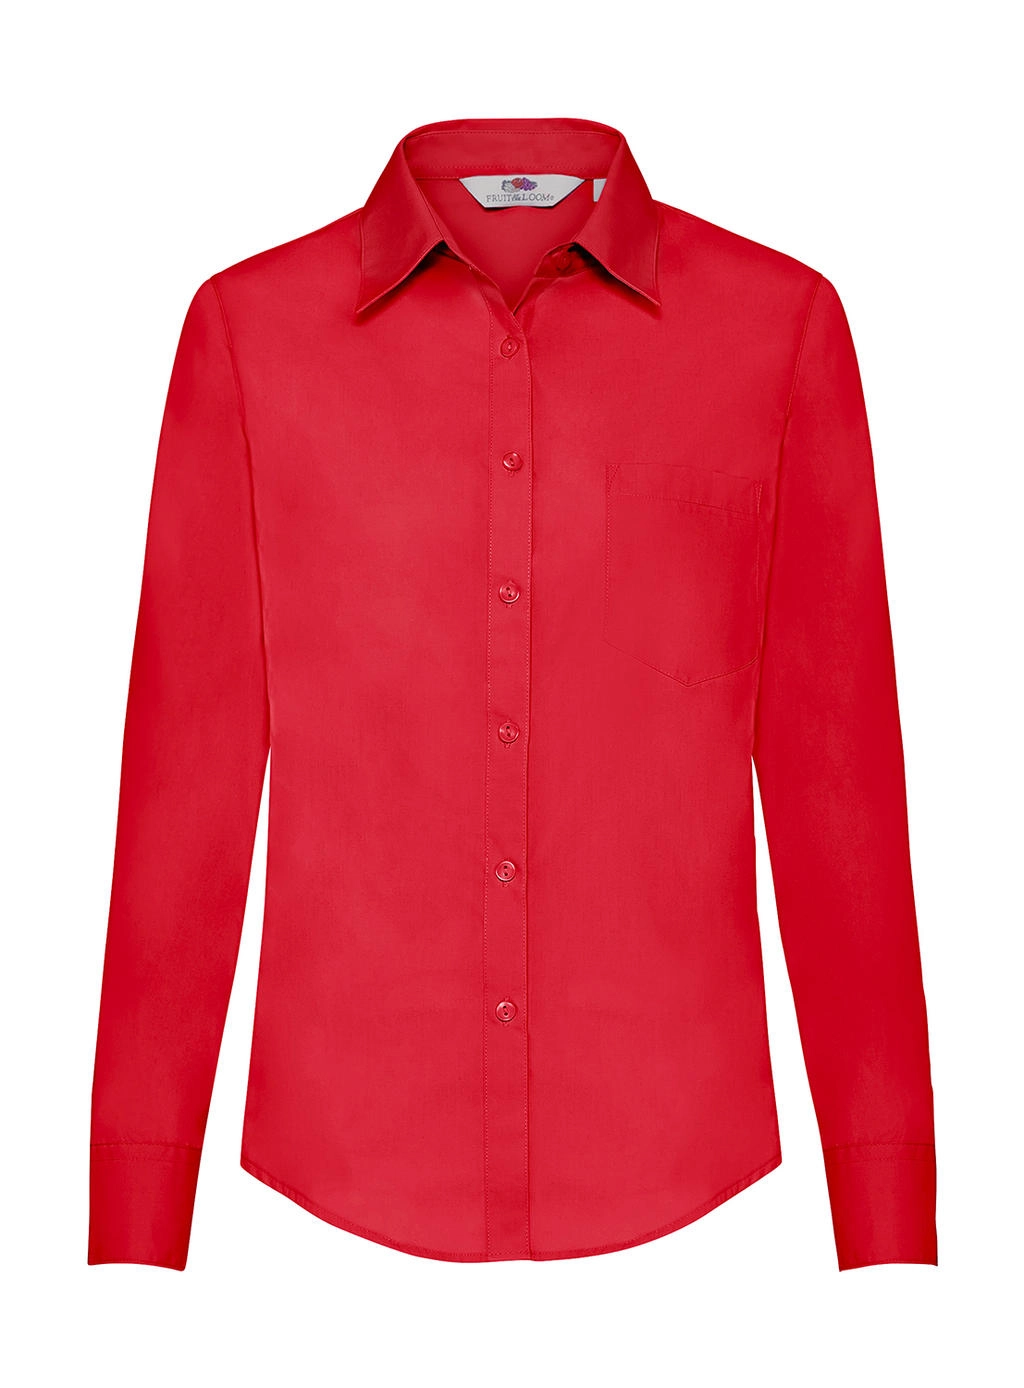 Ladies` Poplin Shirt LS zum Besticken und Bedrucken in der Farbe Red mit Ihren Logo, Schriftzug oder Motiv.